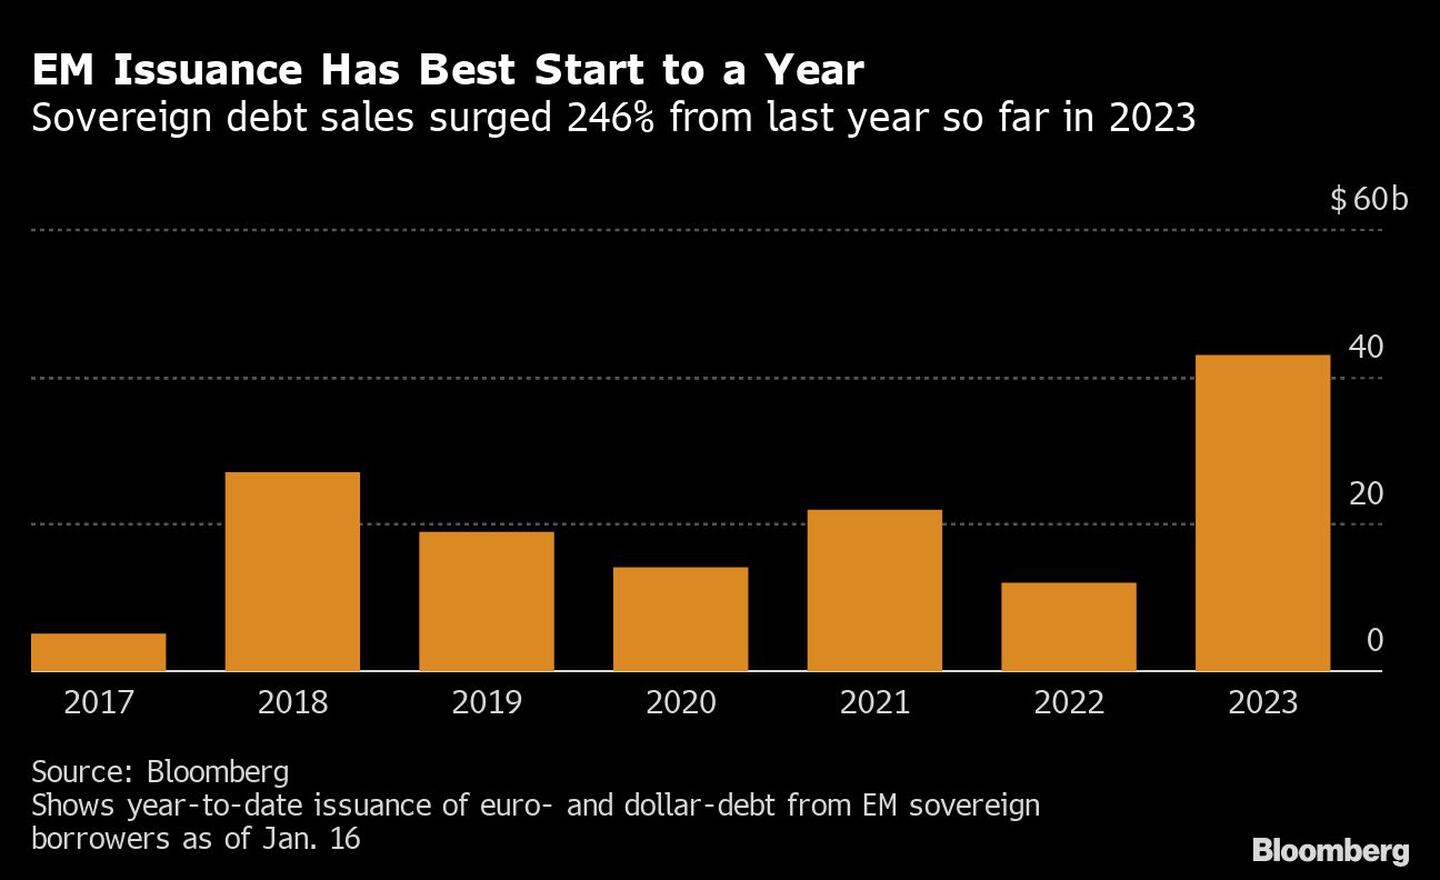  Las ventas de deuda soberana aumentan un 246% respecto al año pasado en lo que va de 2023dfd